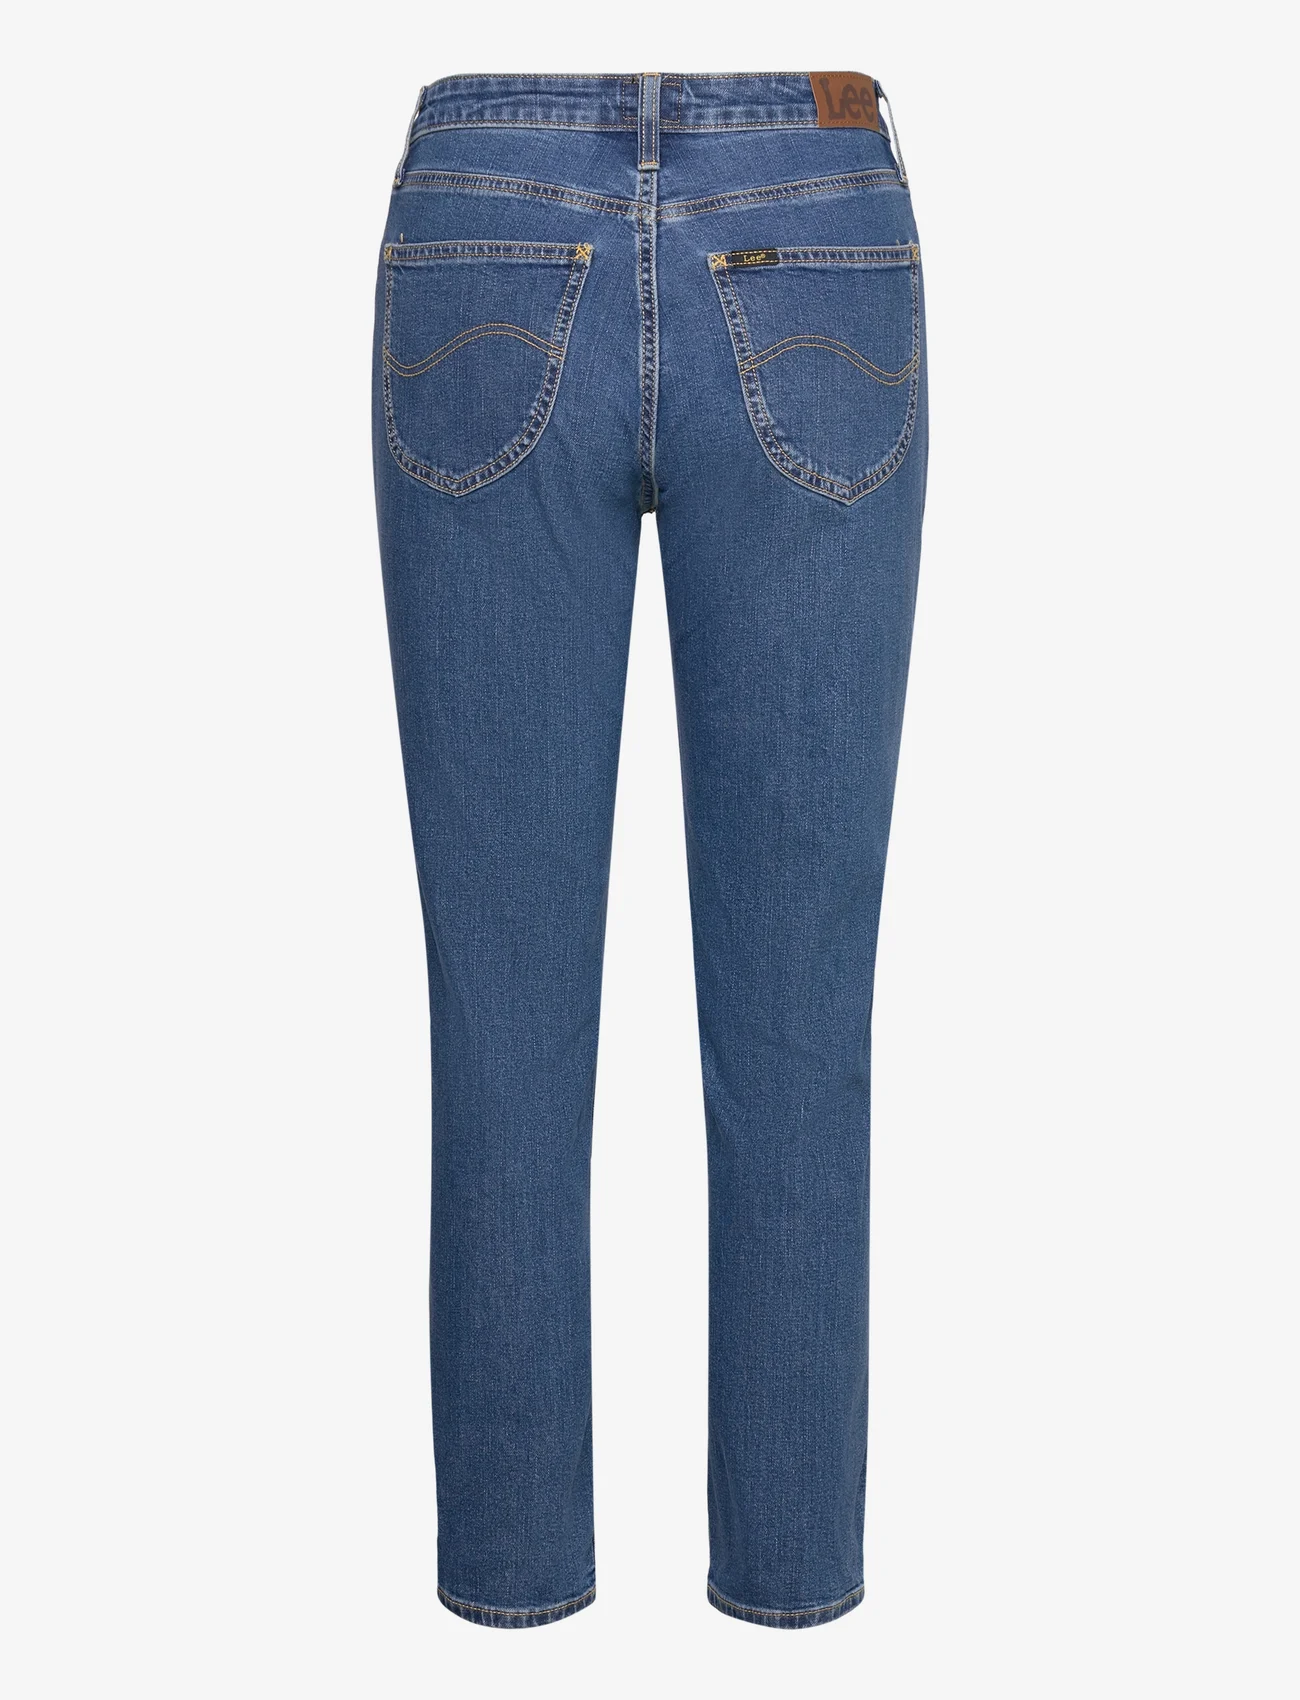 Lee Jeans - CAROL - tiesaus kirpimo džinsai - never blue - 1